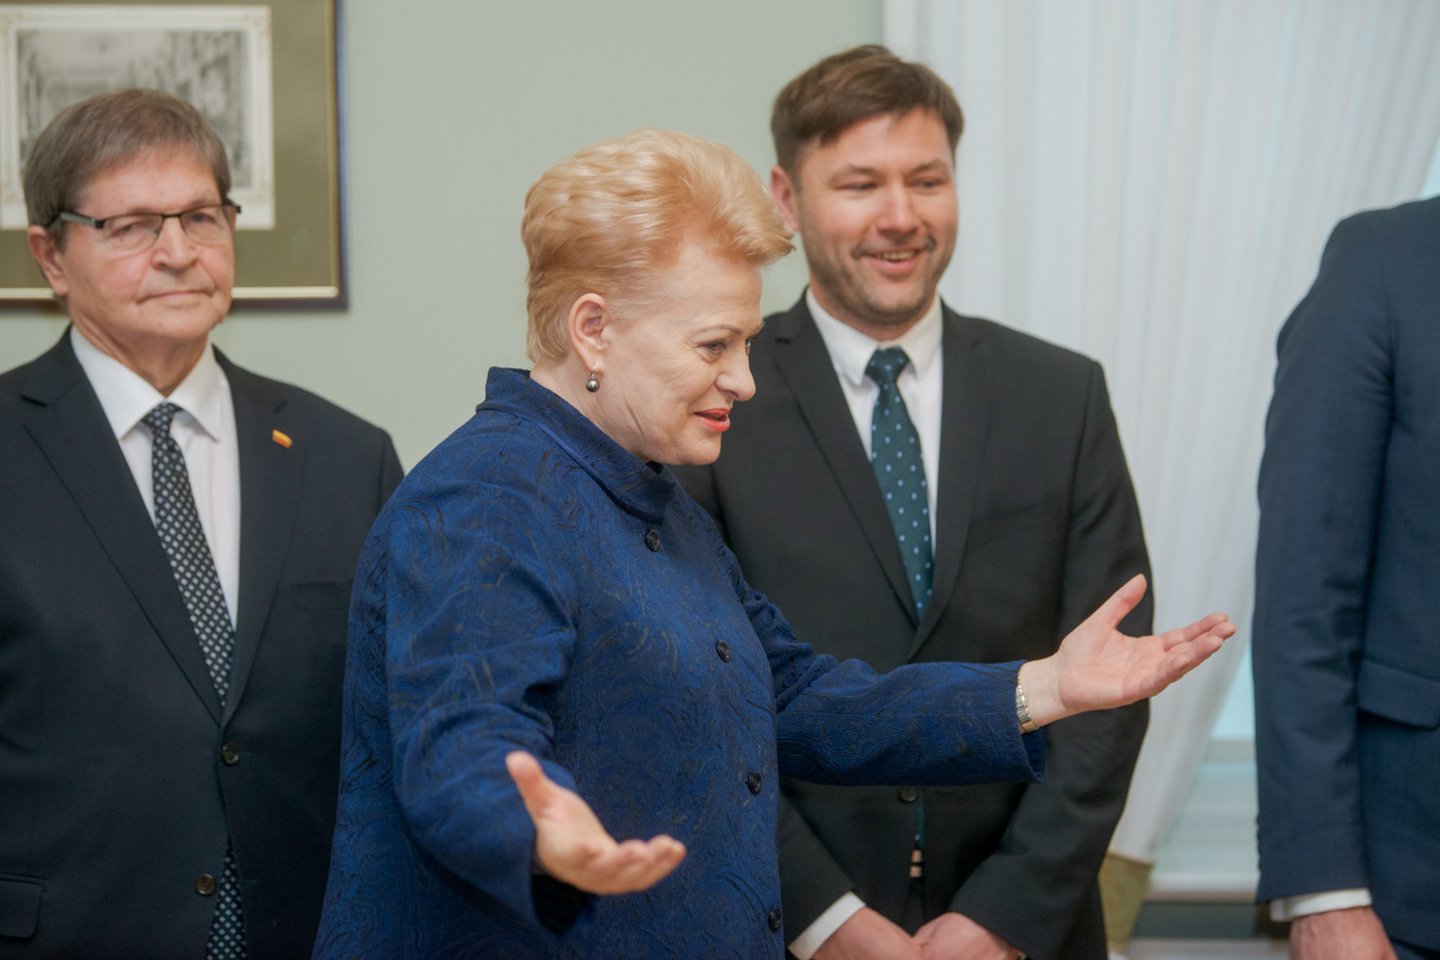  Ketvirtadienį D.Grybauskaitė su streikuojančiais mokytojais ir švietimo sektoriaus valdininkais aptarė susidariusią situaciją.<br> J.Stacevičiaus nuotr.